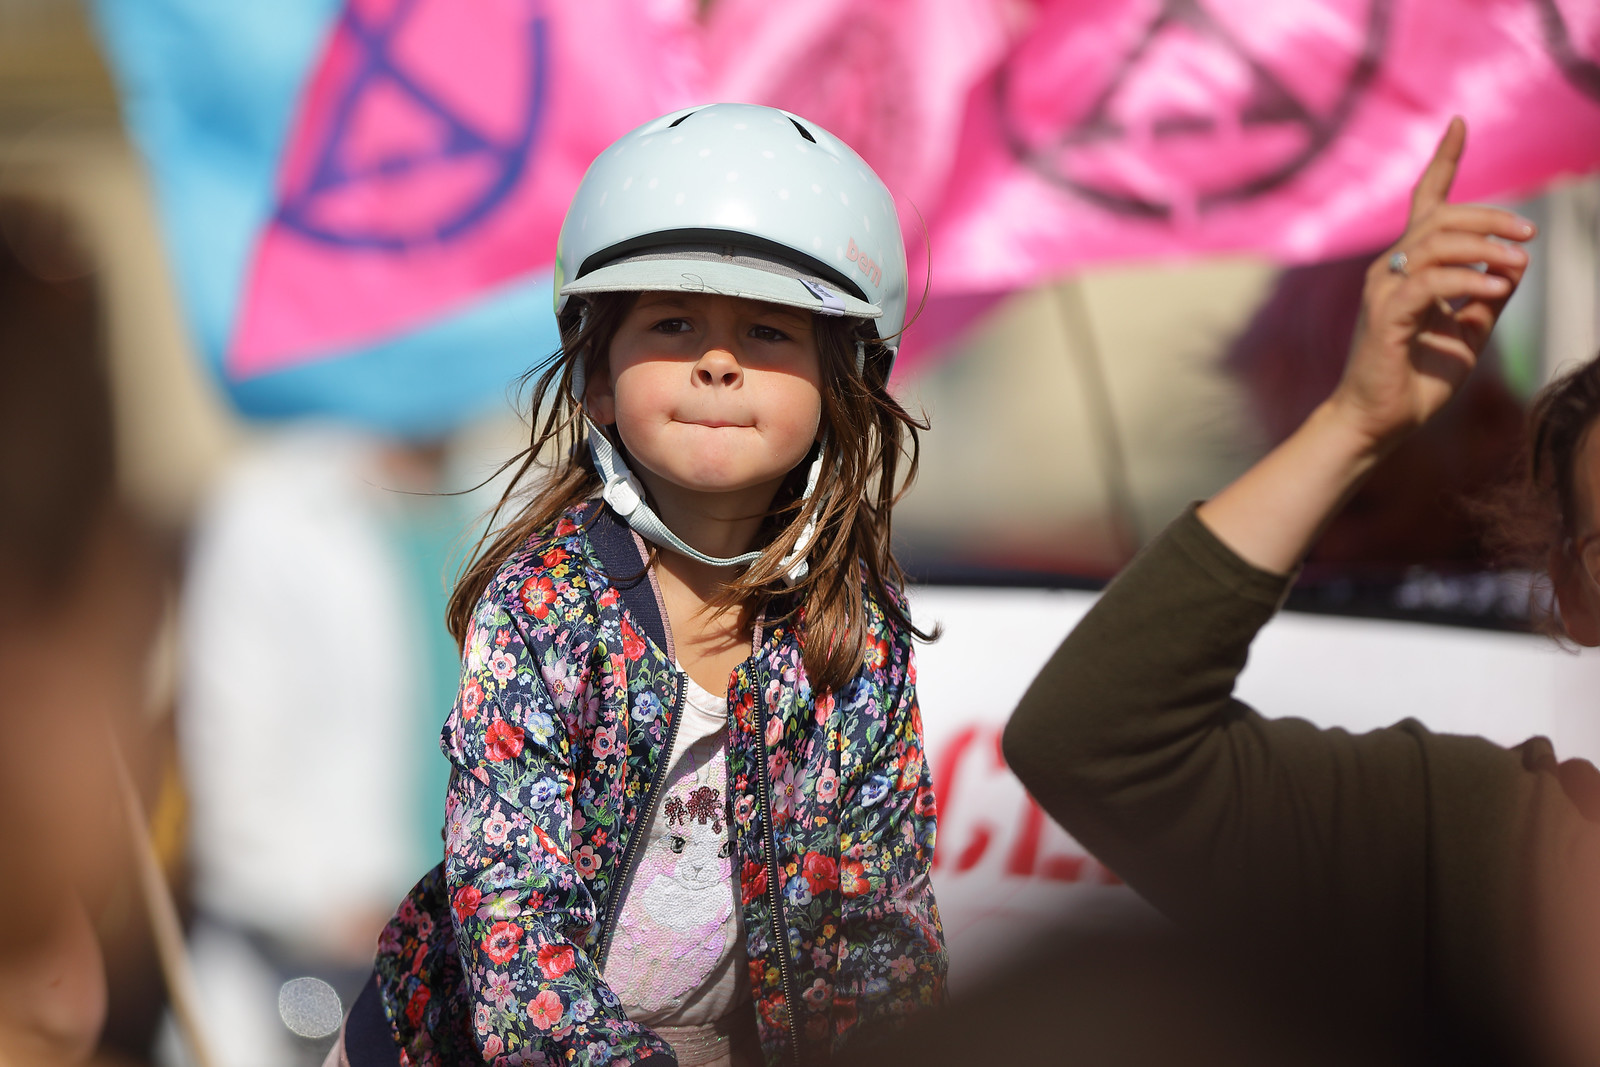 Brighton_Global_Climate_Strike_September_2019_Child